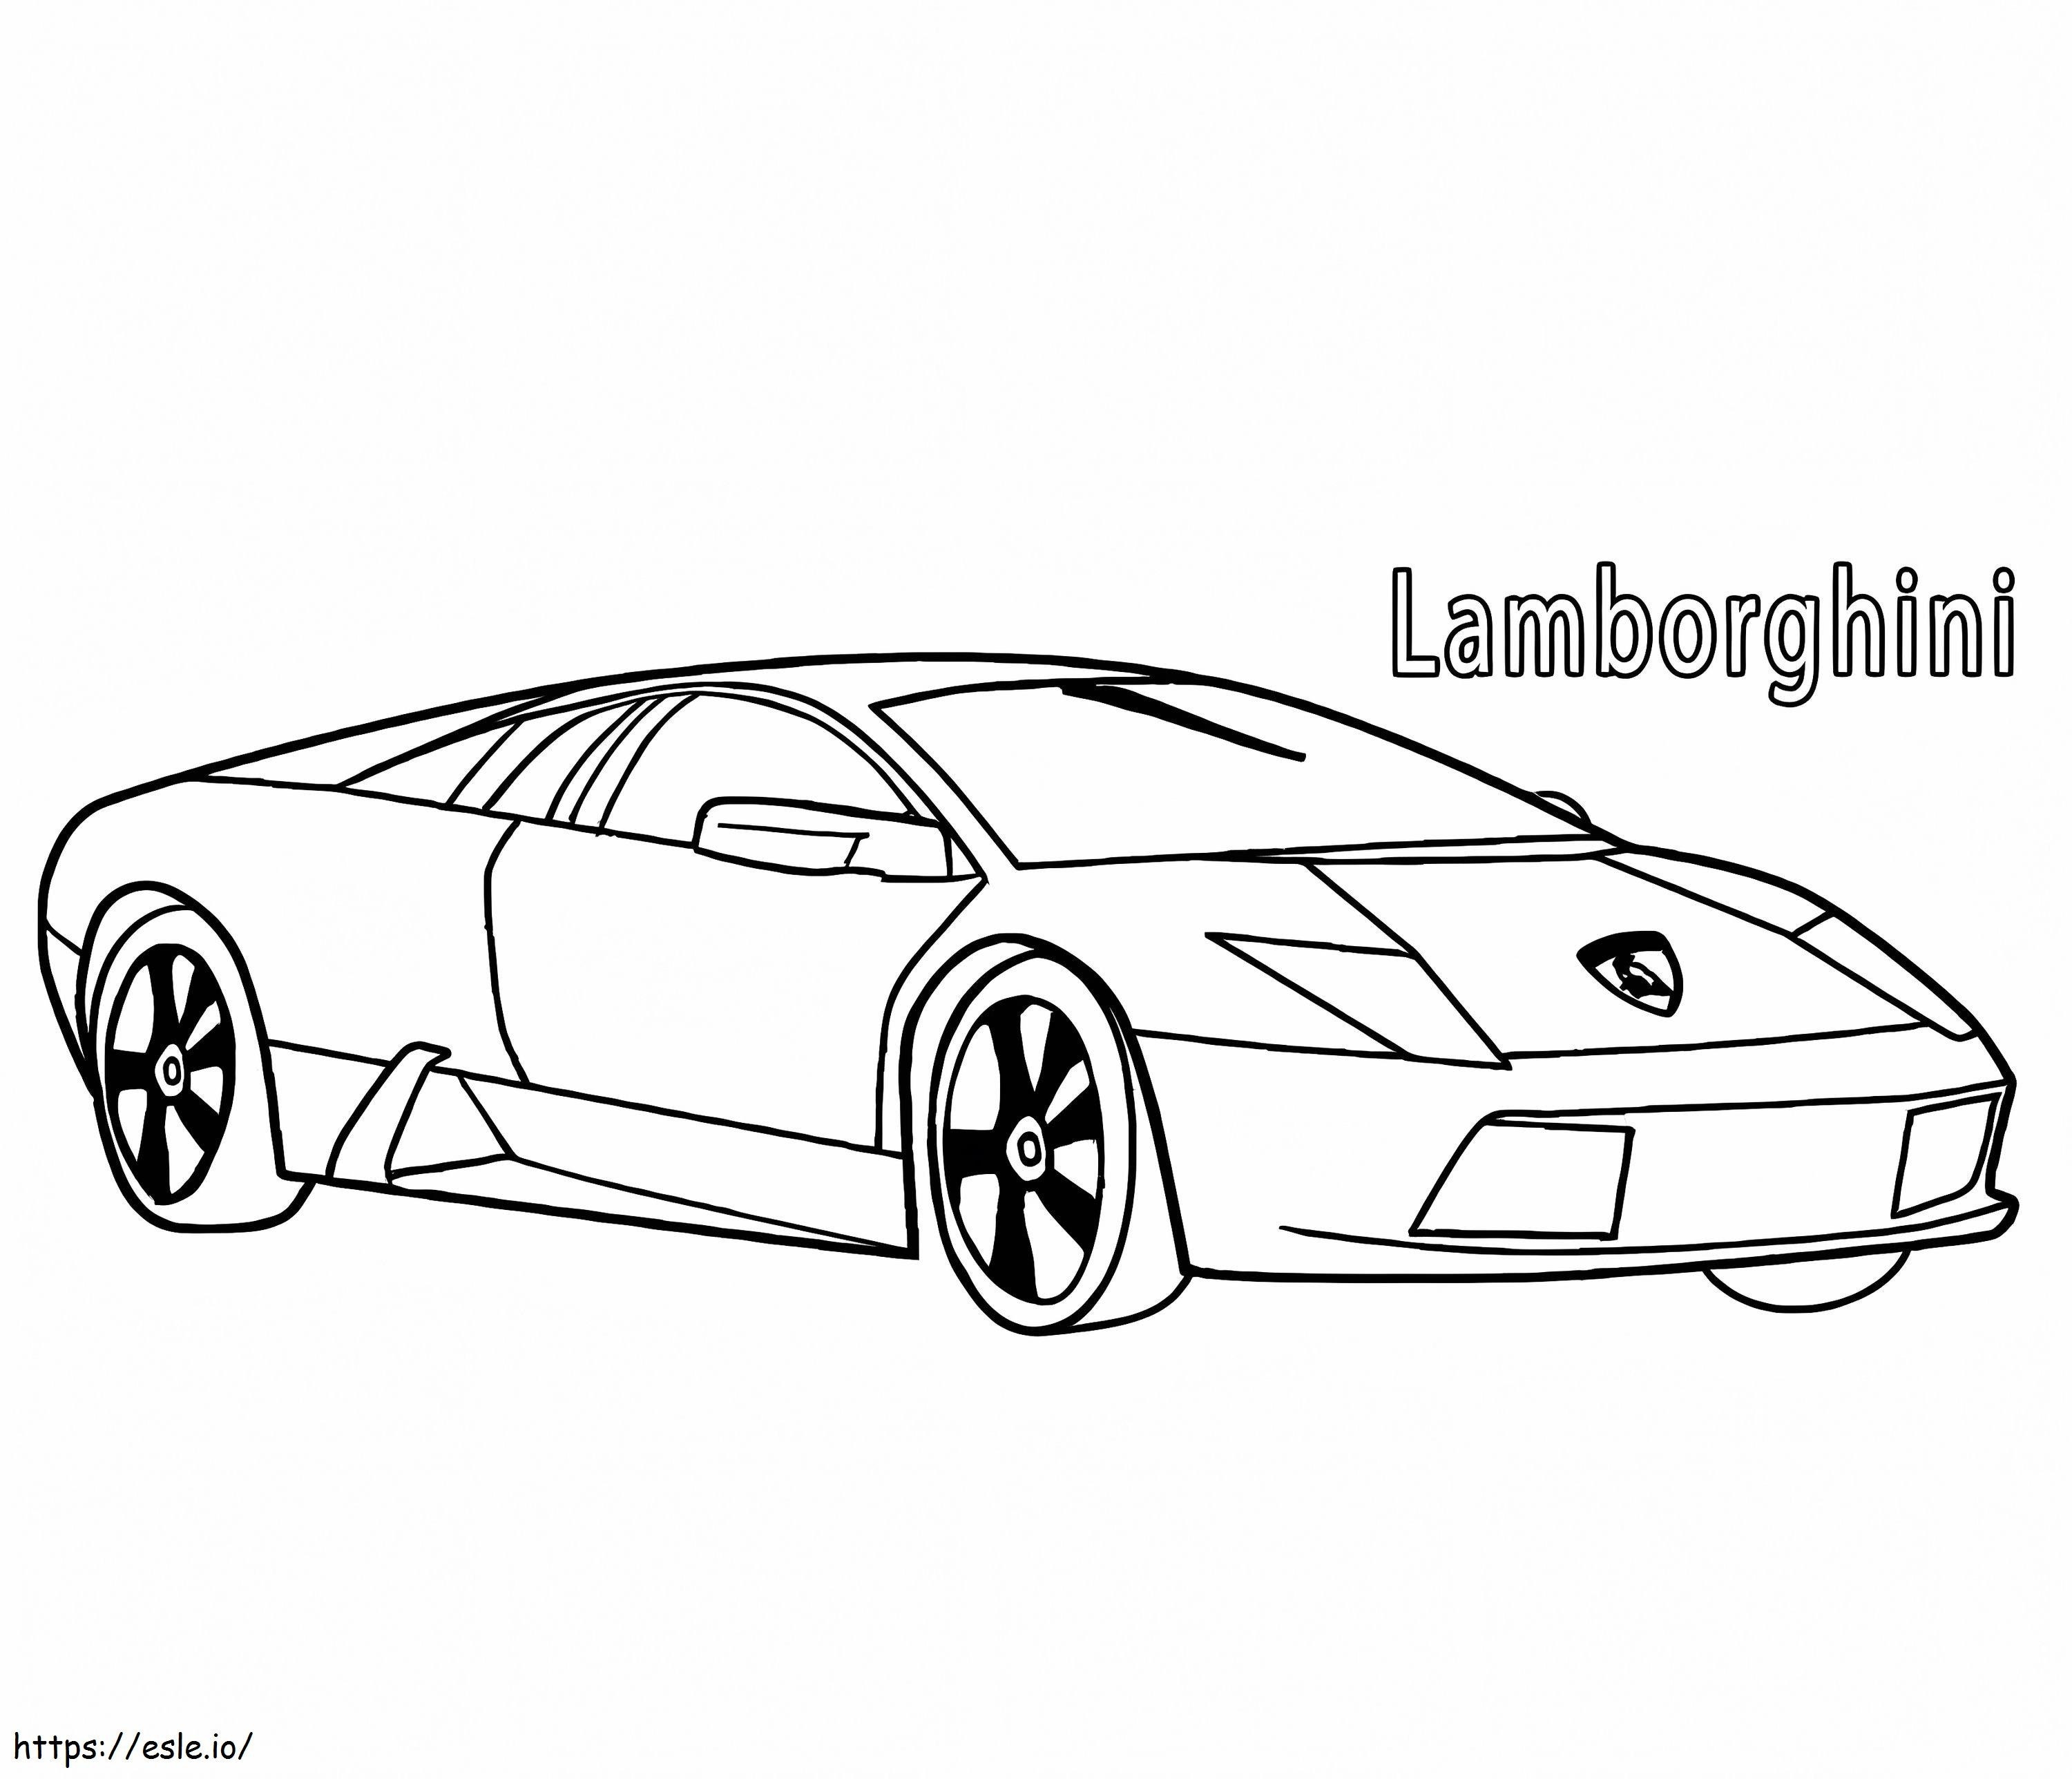 Lamborghini 3 da colorare